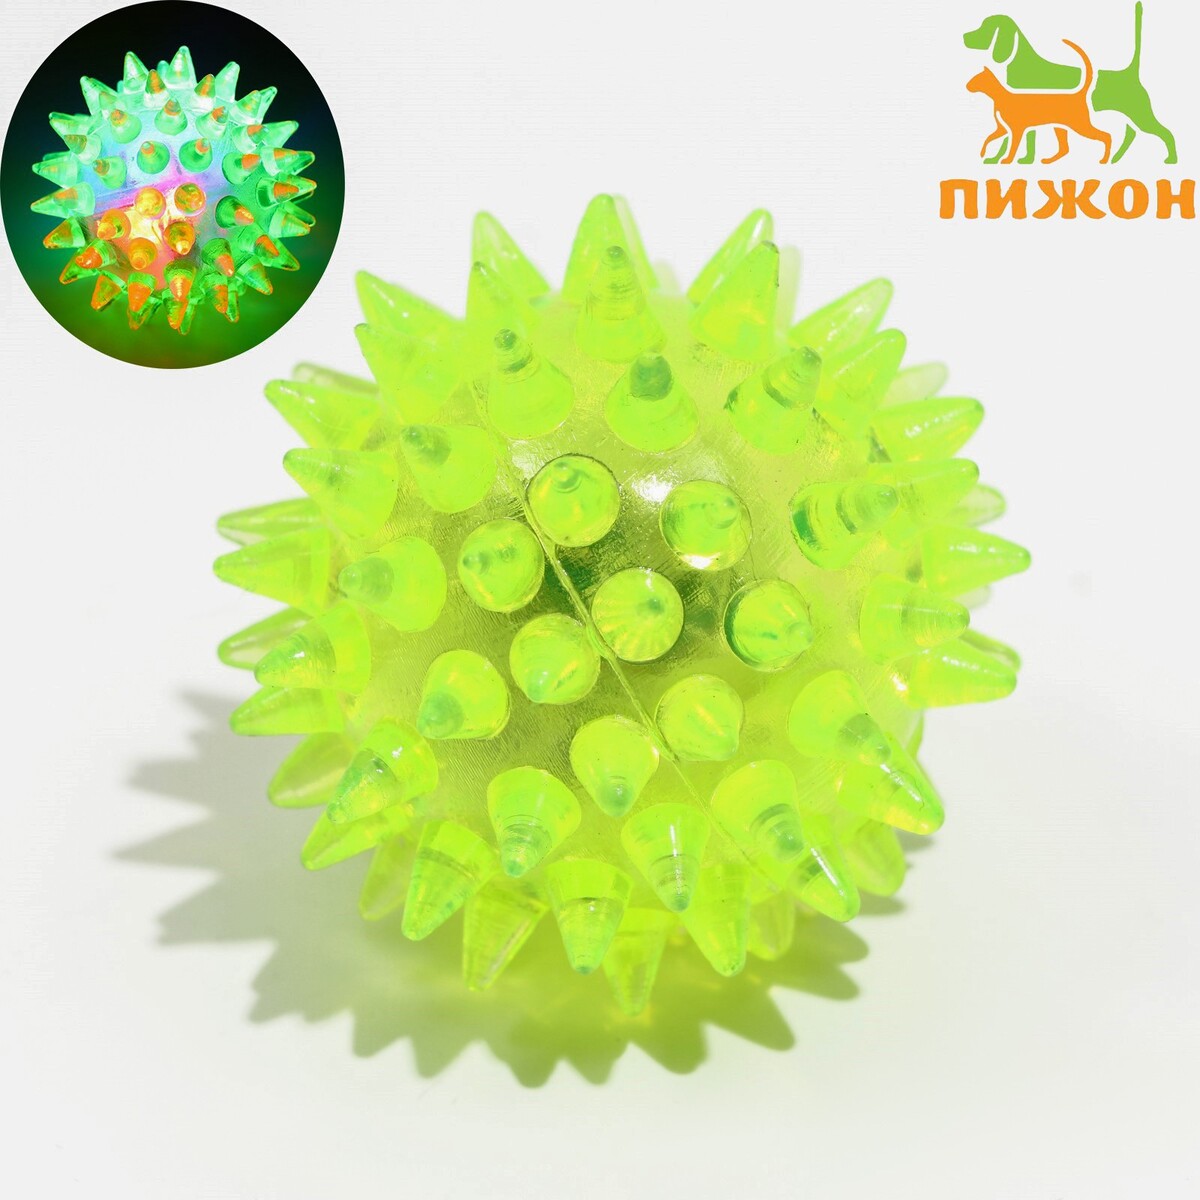 Мяч светящийся для животных малый, tpr, 4,5 см, желтый